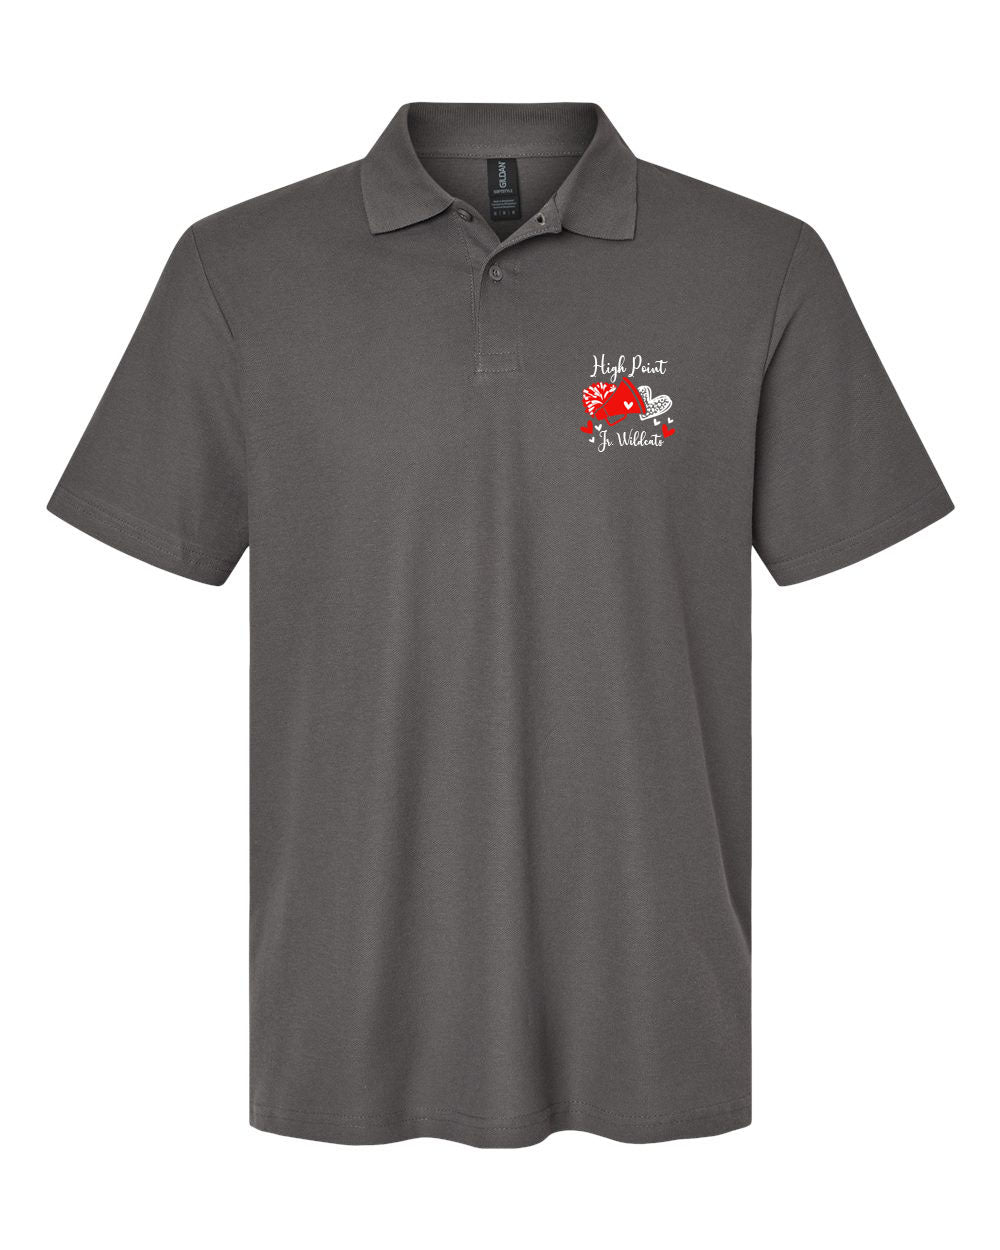 High Point Cheer Design 6 Polo T-Shirt